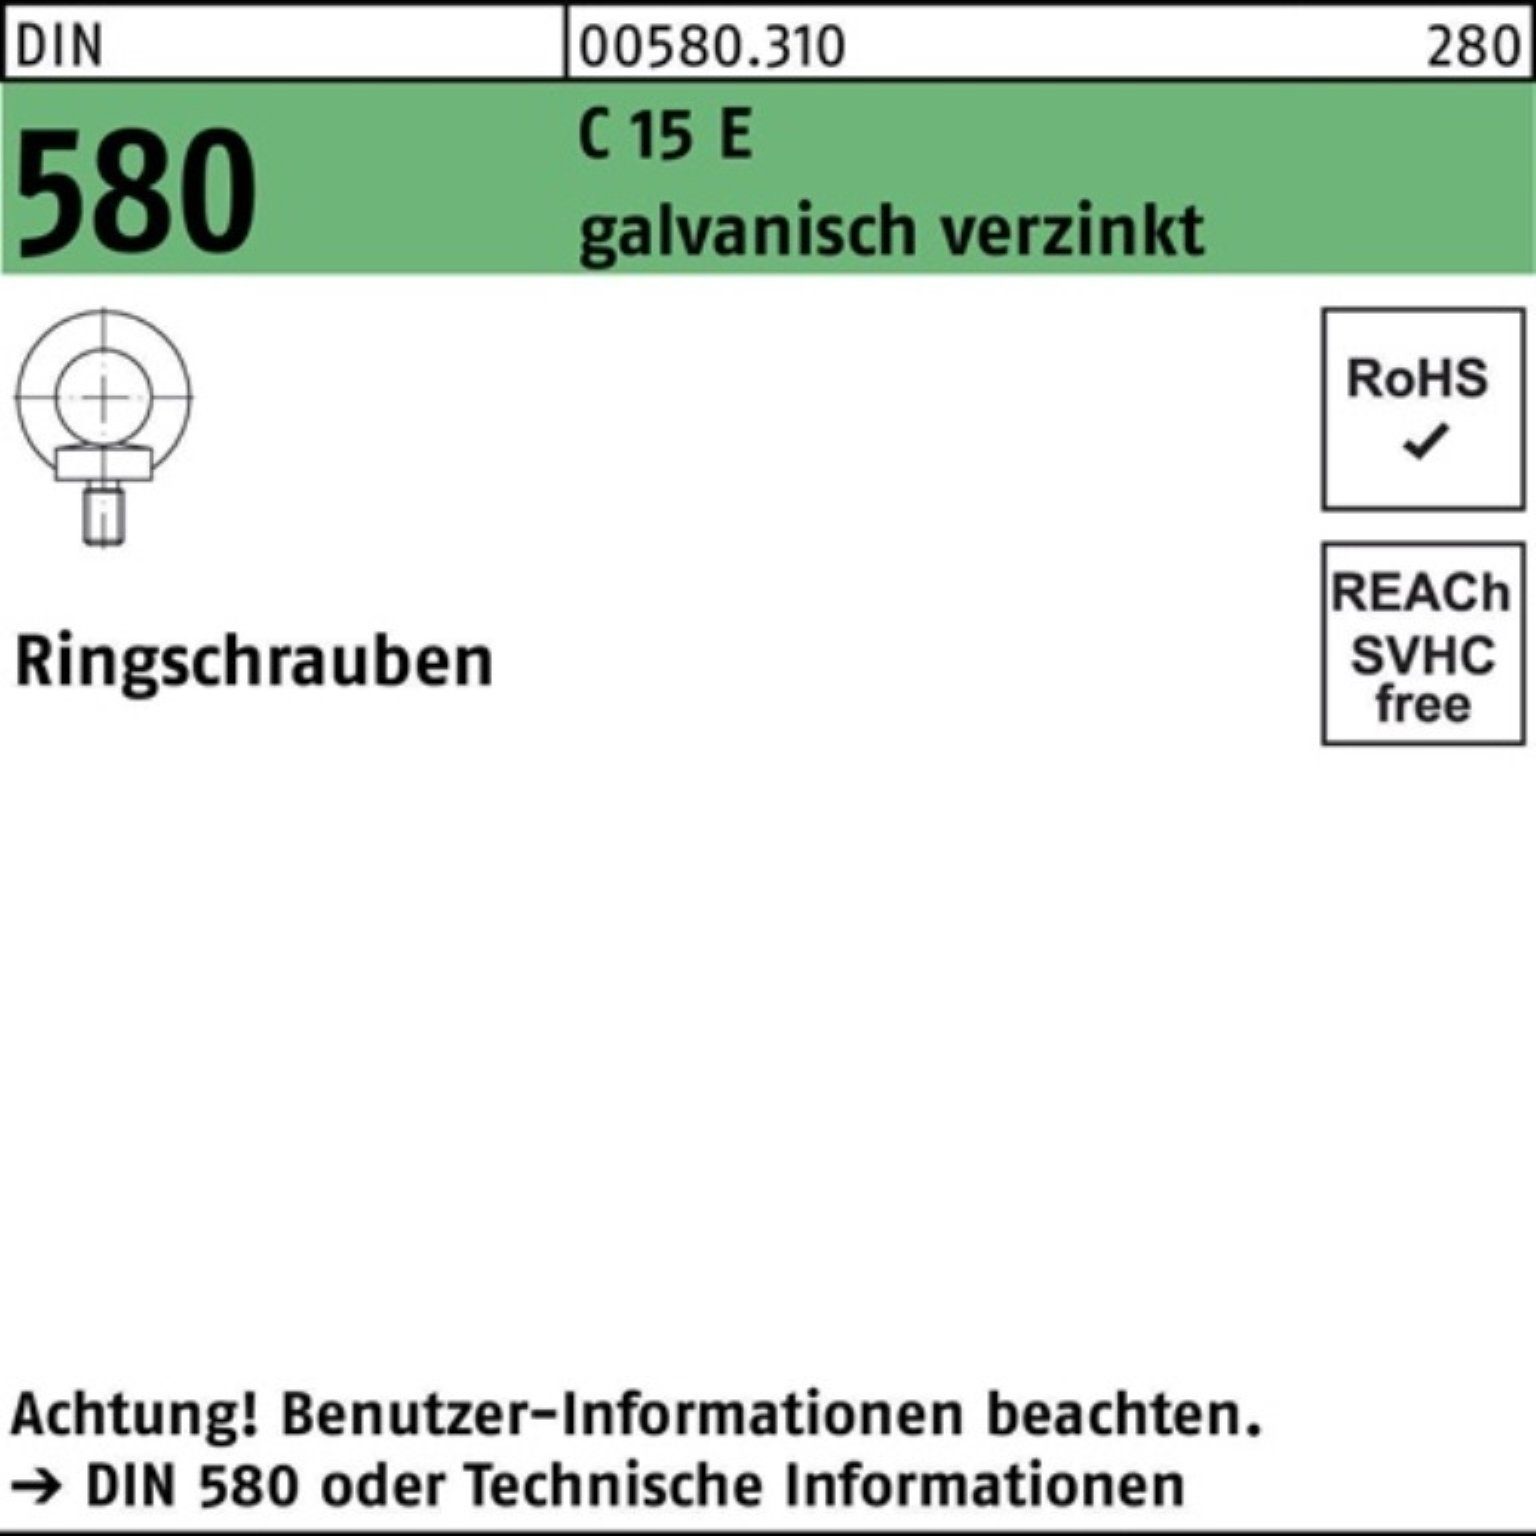 Reyher Schraube 100er Pack Ringschraube DIN 580 M56 C 15 E galv.verz. 1 Stück DIN 580